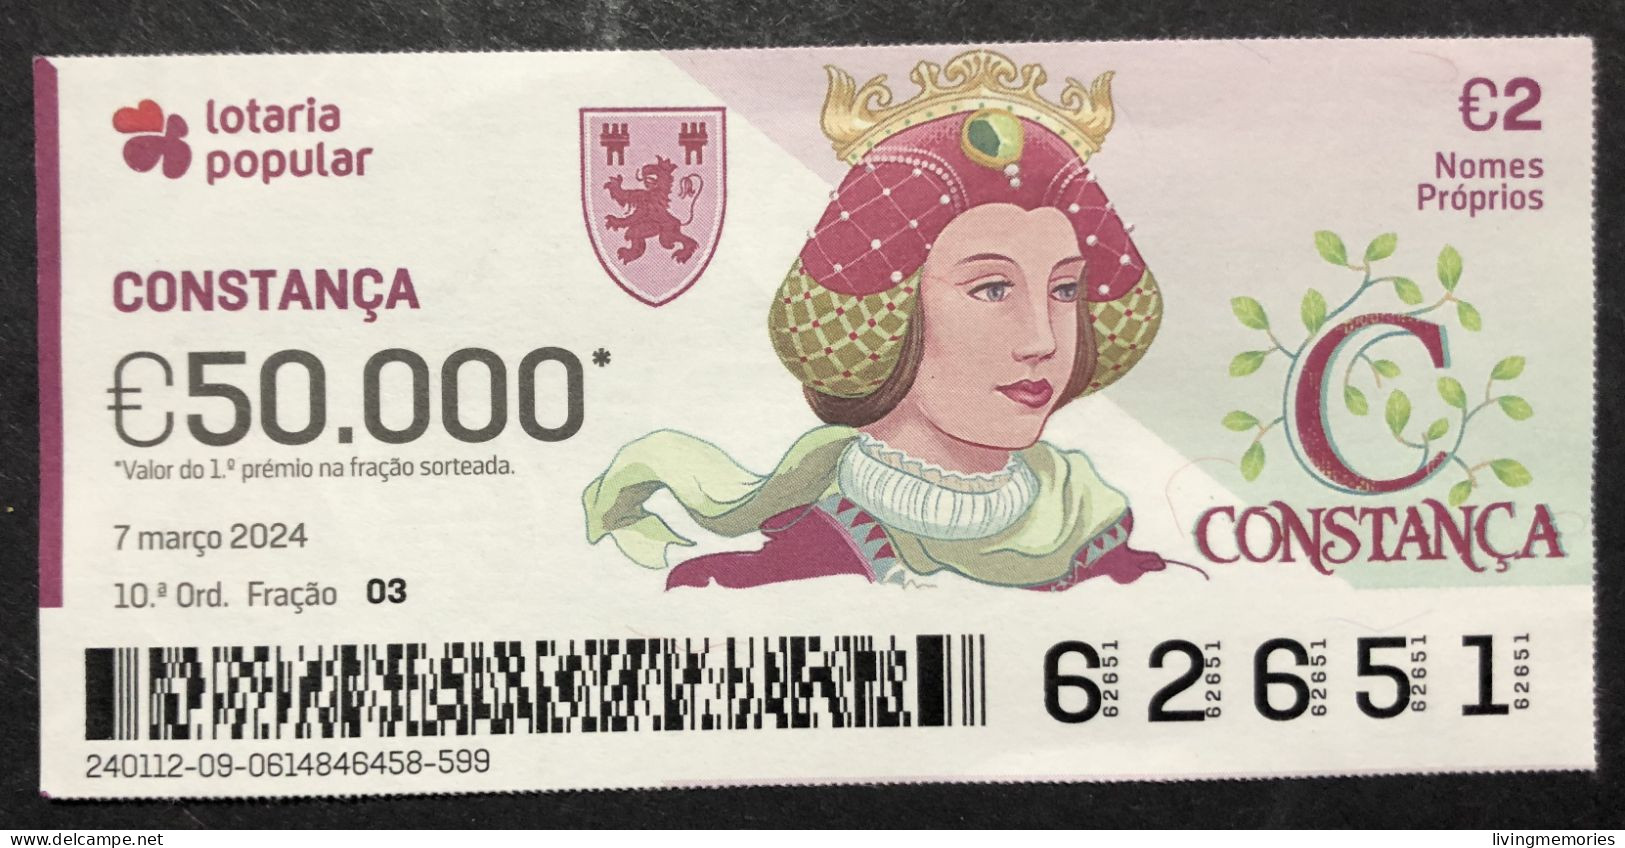 116 P, 1 X Lottery Ticket, Portugal, « NOMES Próprios: CONSTANÇA », « First NAMES: CONSTANÇA », «NOM: CONSTANÇA »,  2024 - Billetes De Lotería